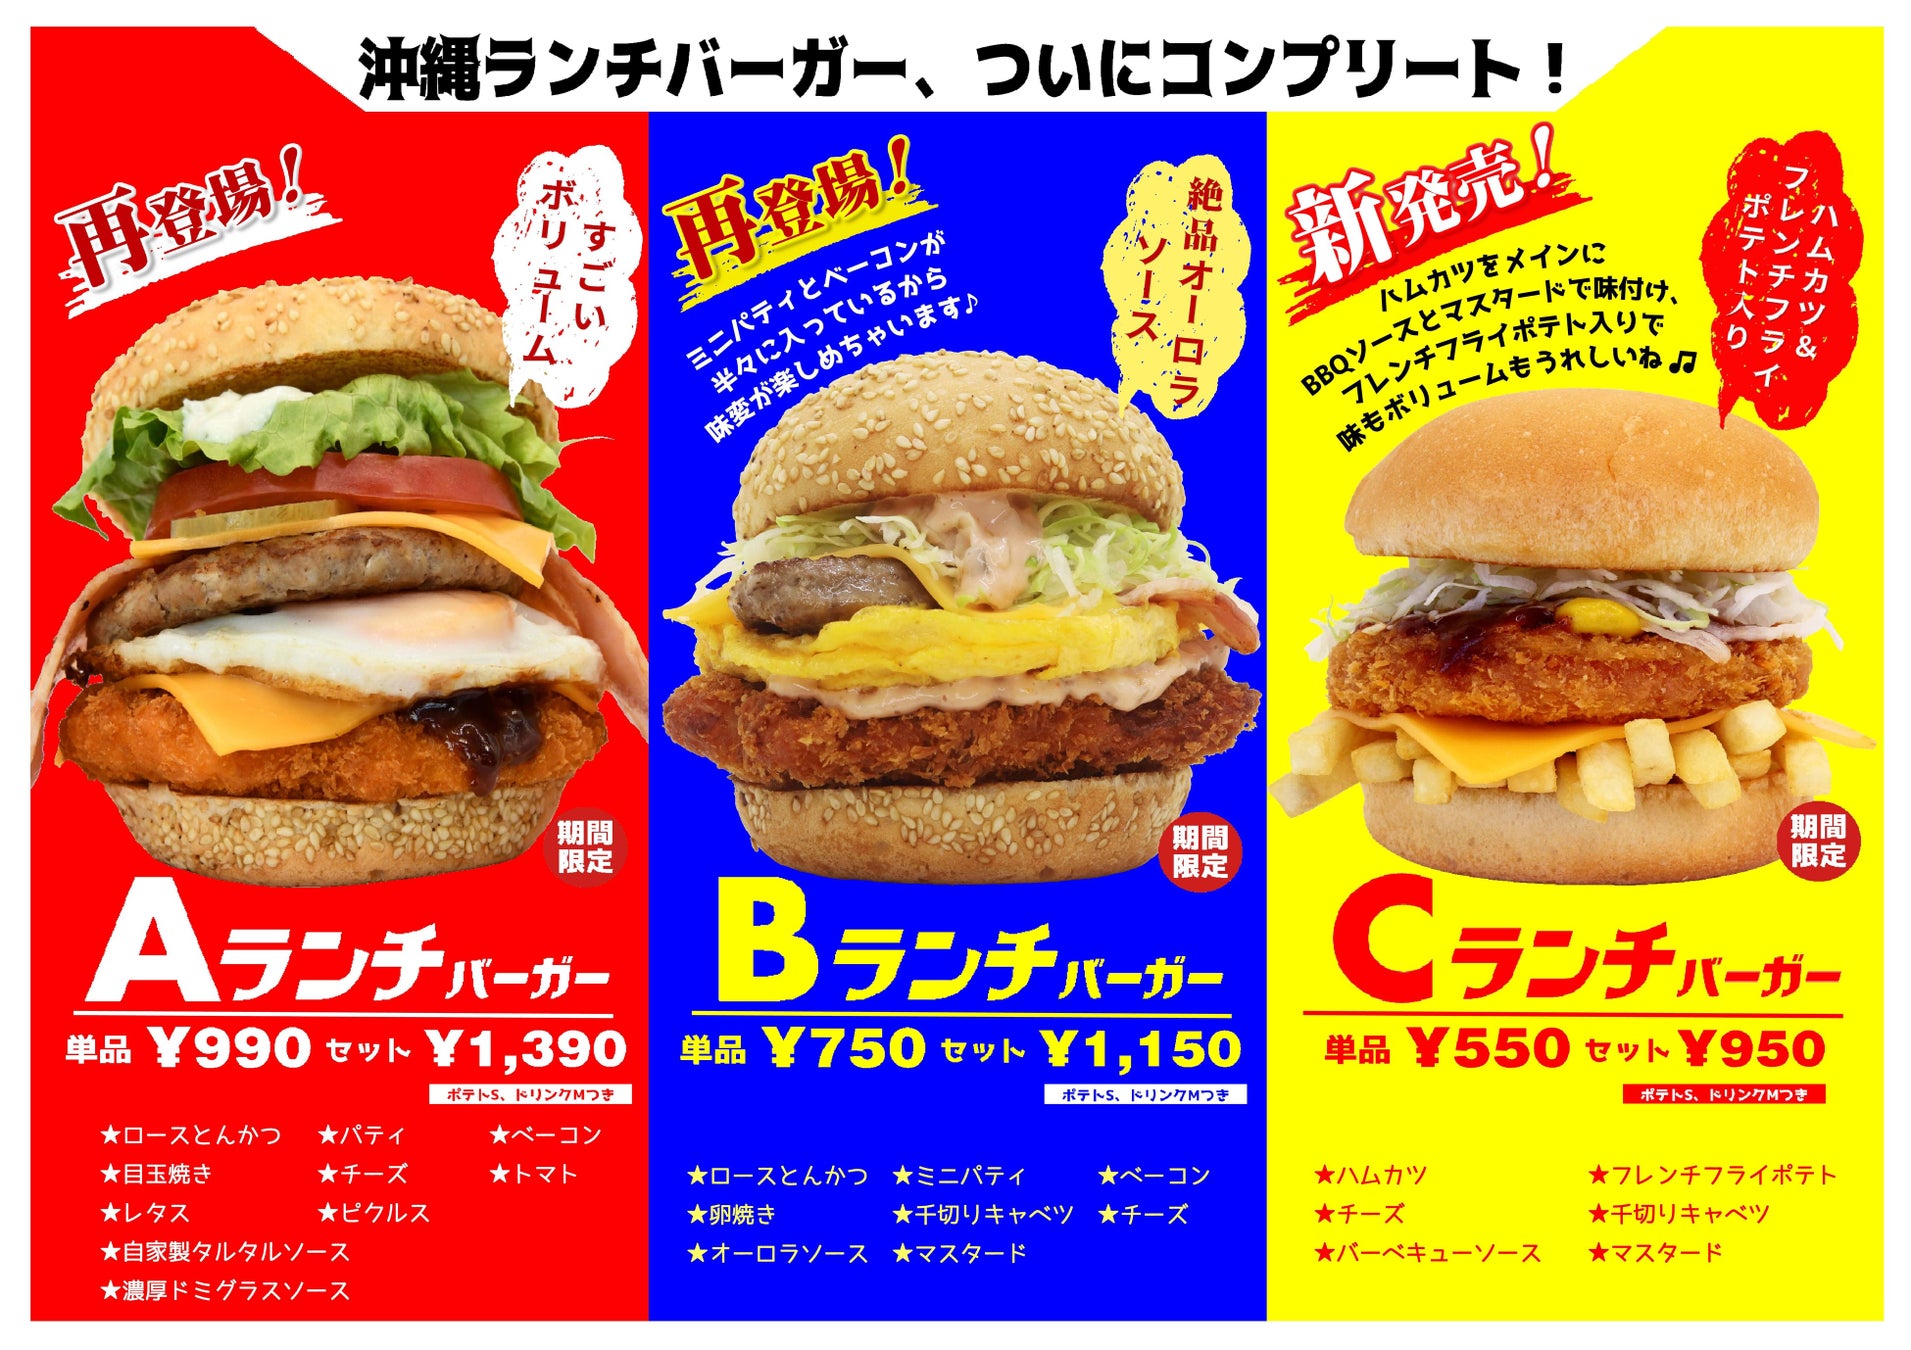 沖縄の食文化のひとつ、食堂でおなじみのABCランチが沖縄ランチバーガーとして登場！９月までの期間限定で３品同時販売！